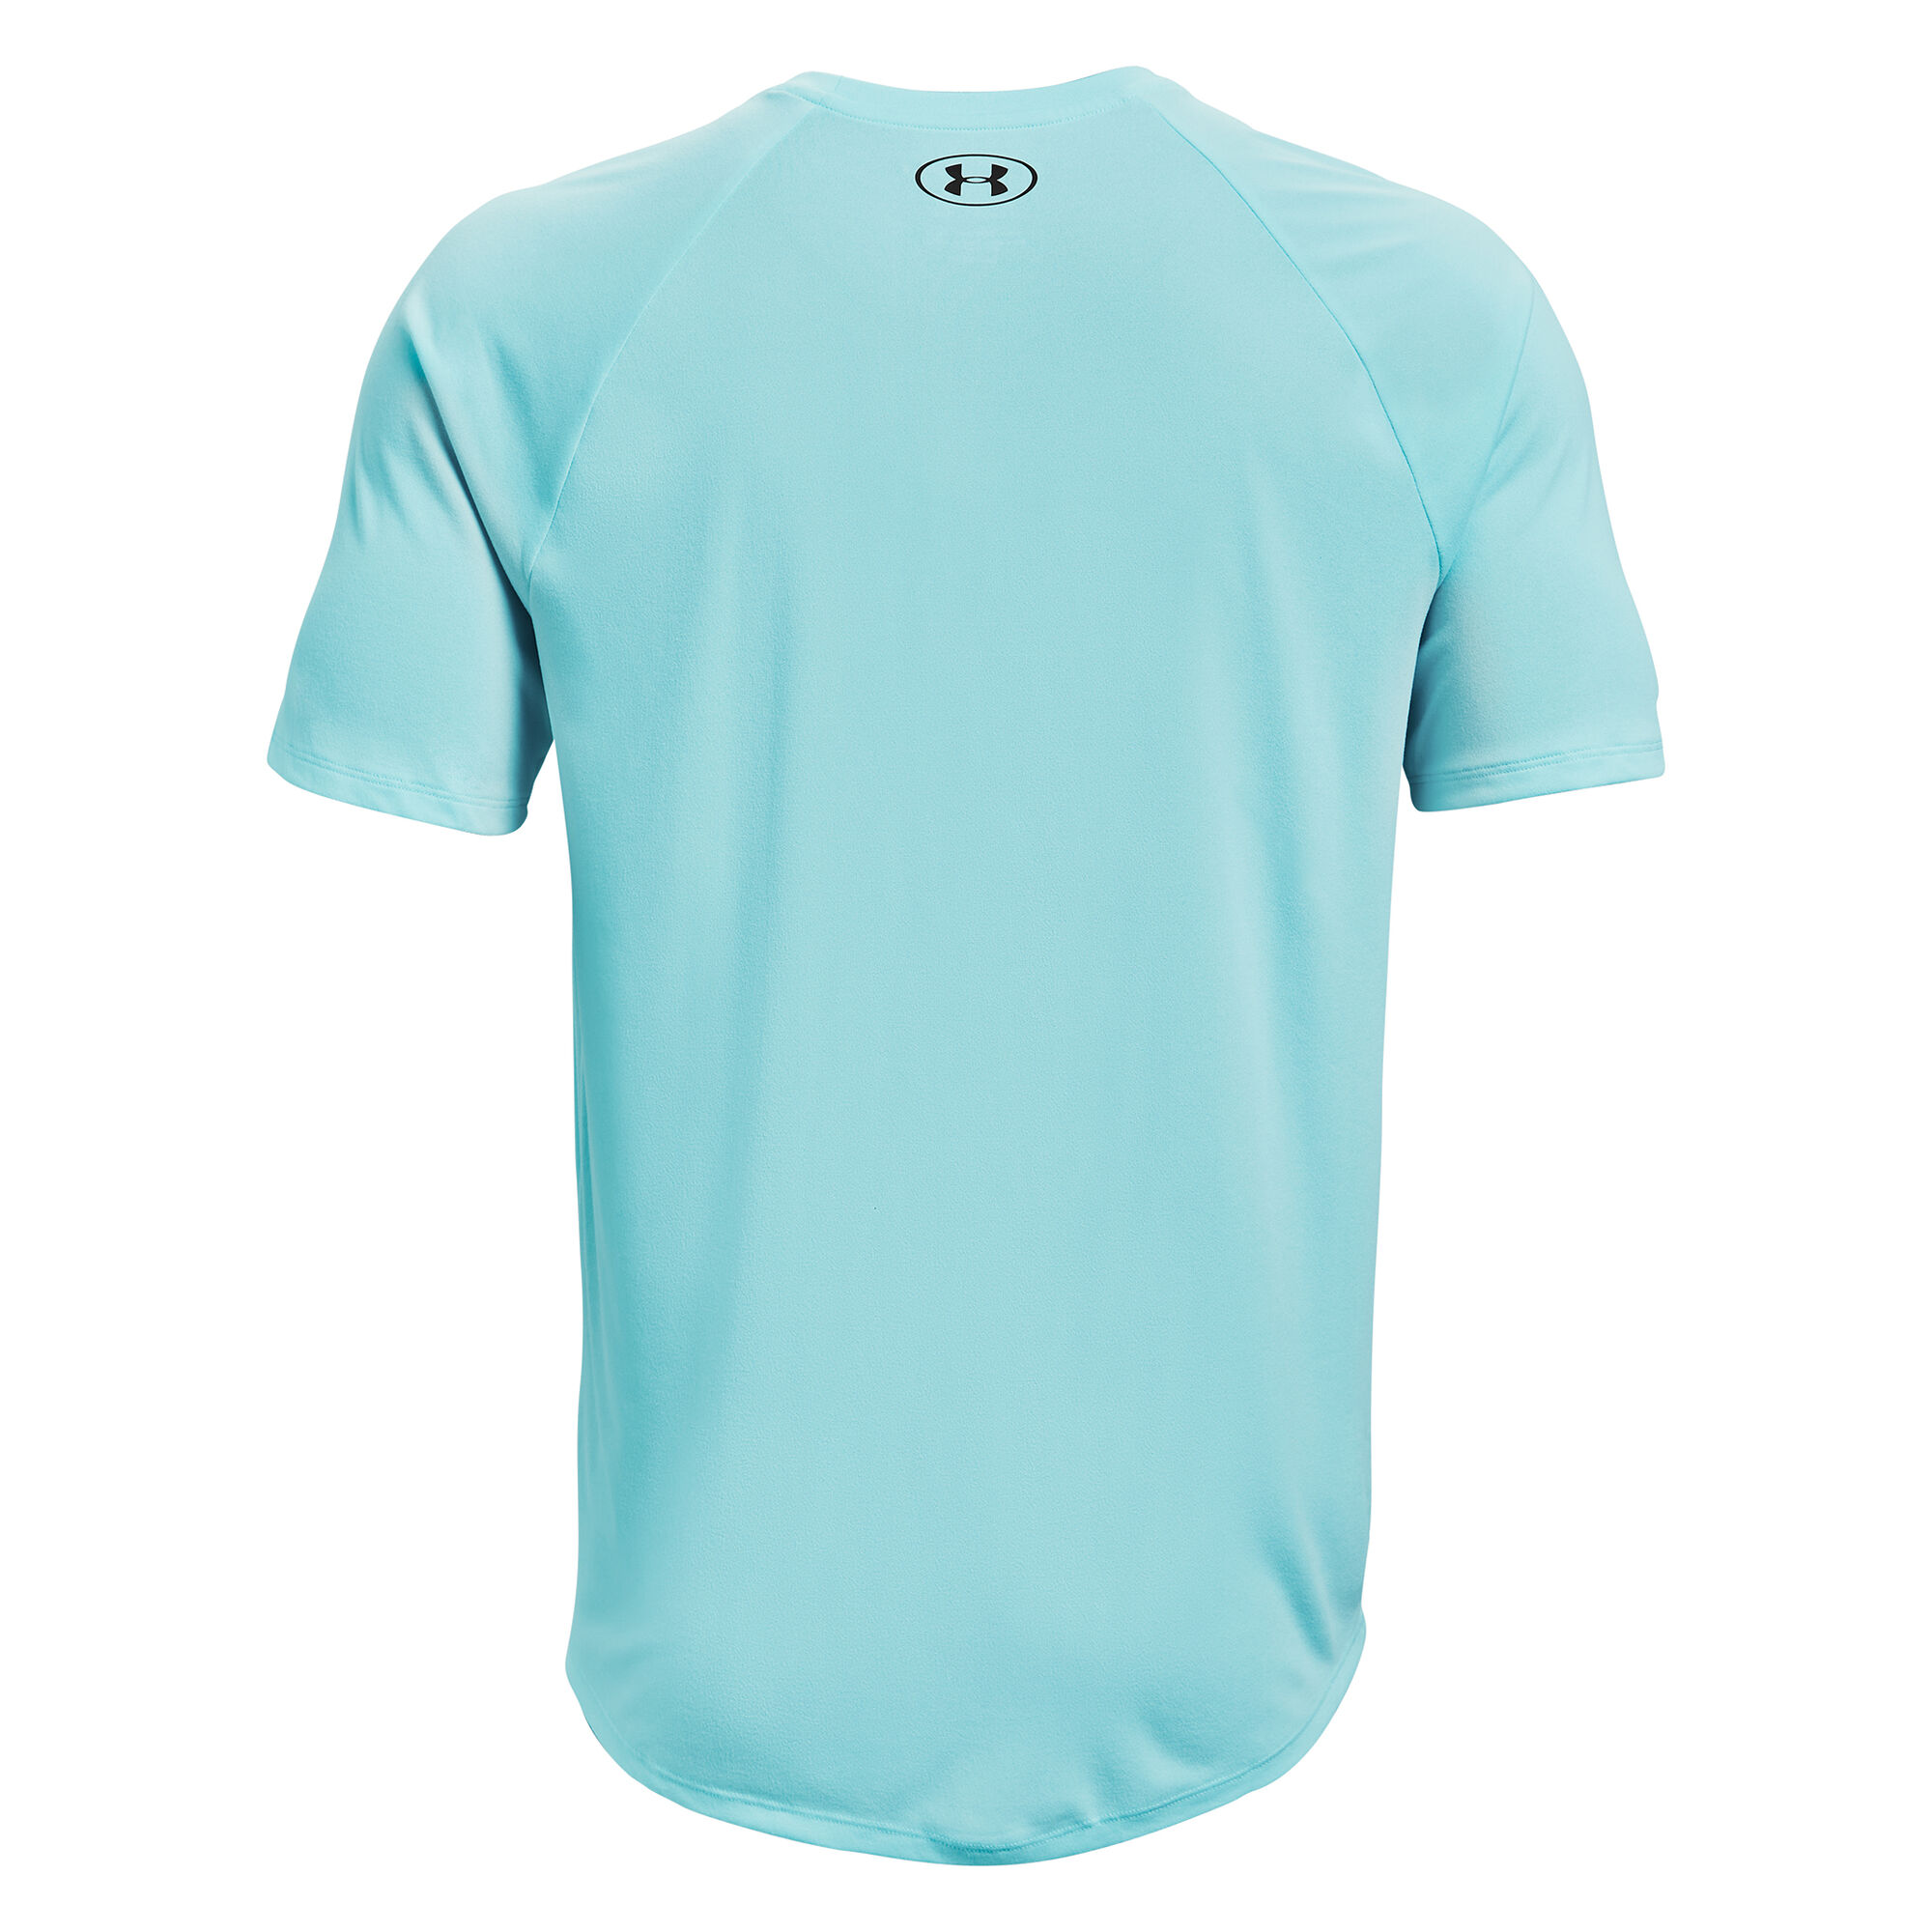 Under Armour - Training - Tech 2.0 - T-shirt in lichtblauw